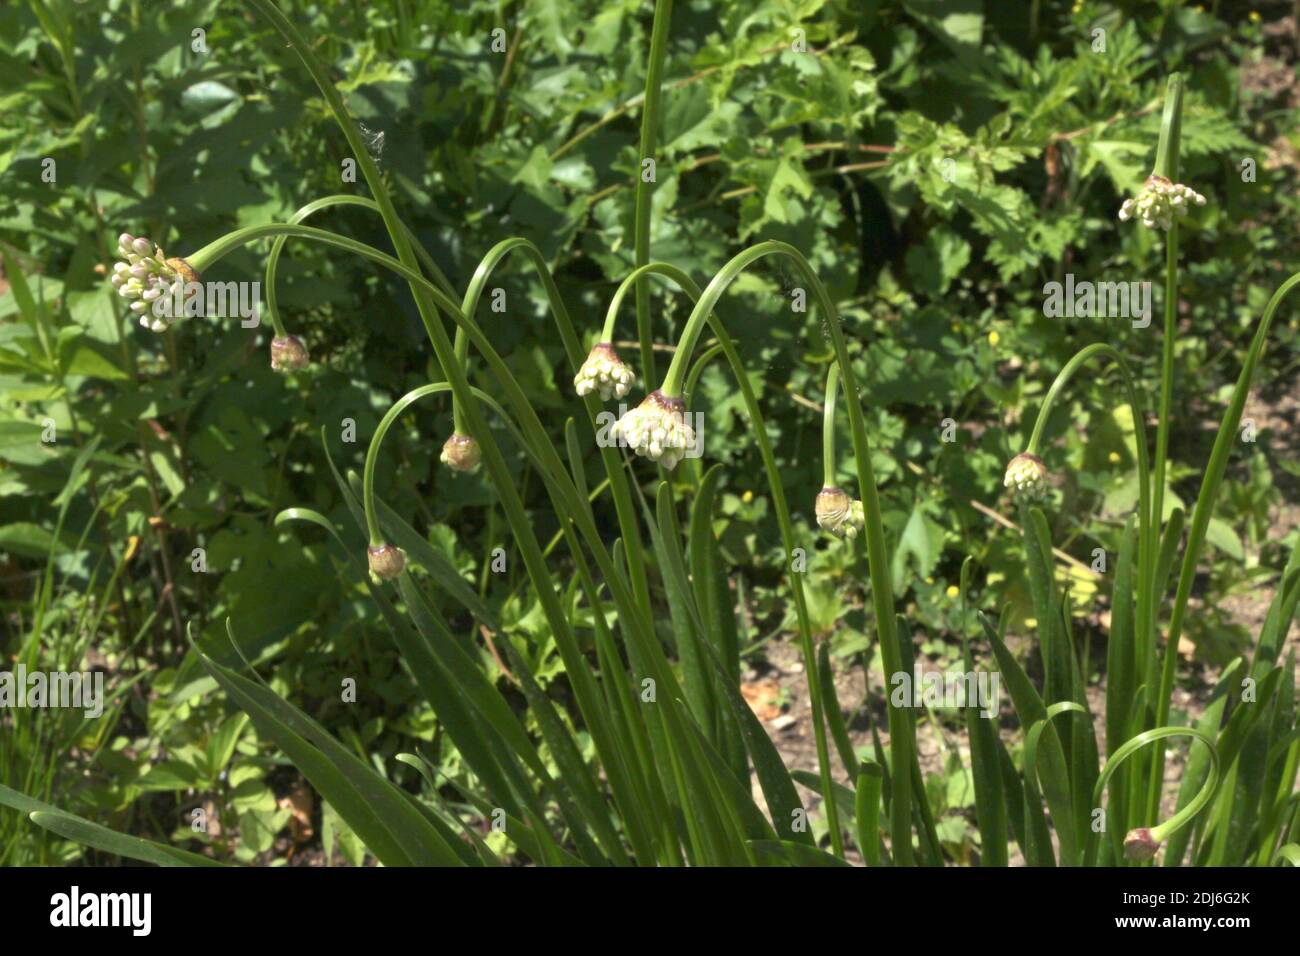 Nodding Allium flower buds growing in a garden in Wisconsin, USA Stock Photo